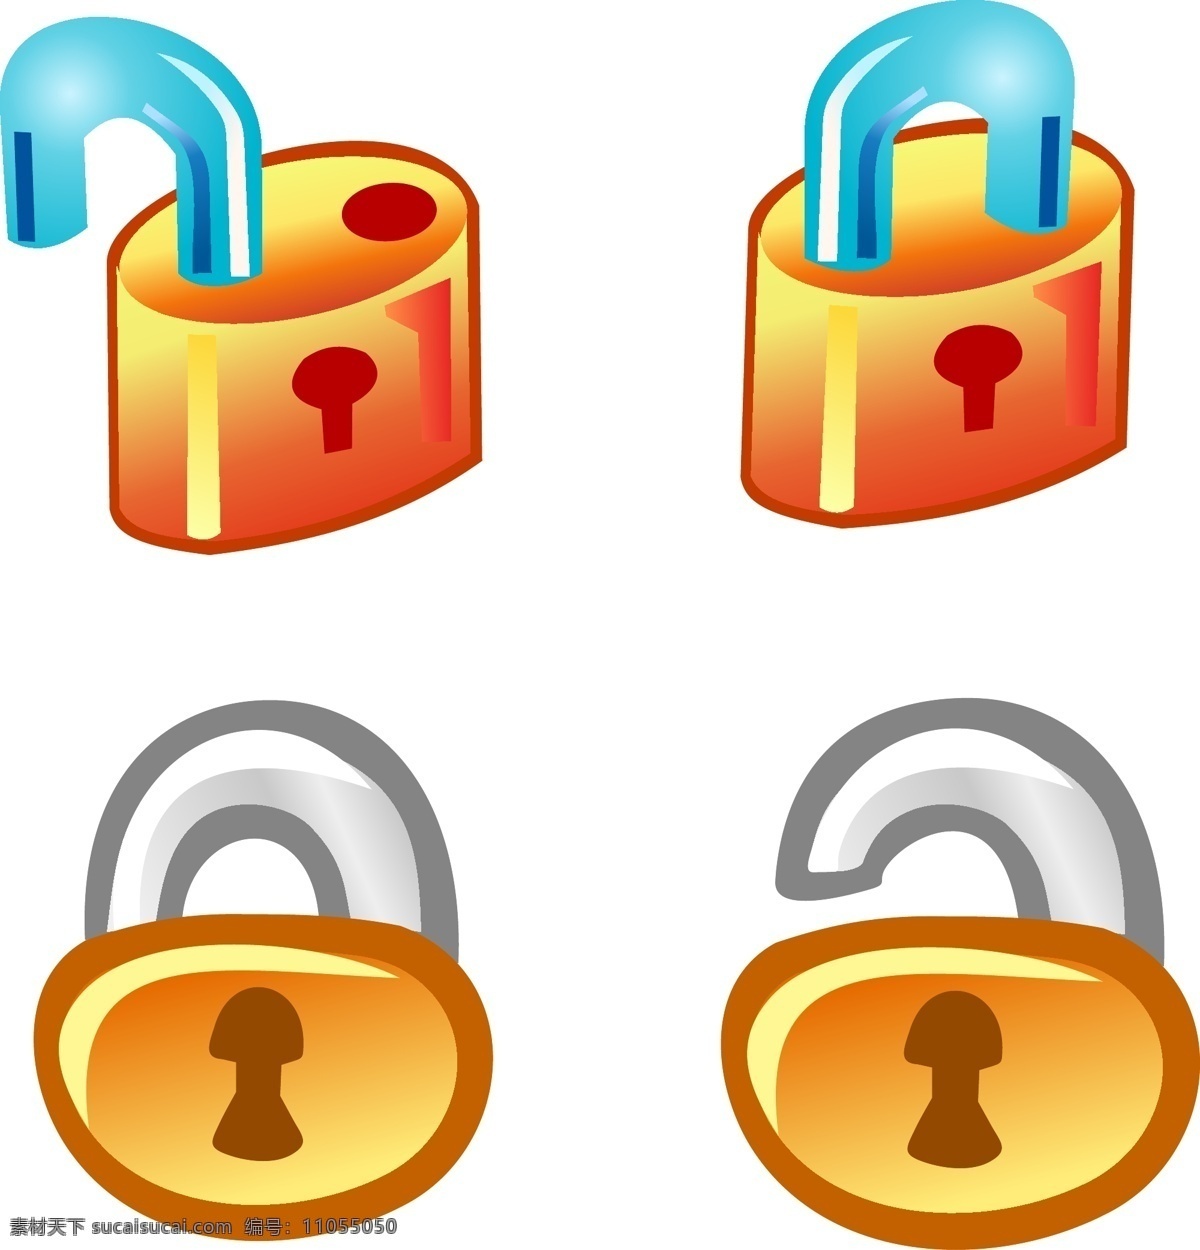 锁 图标 锁的图标 自由 商业 锁锁 矢量 免费 图标矢量锁 锁的图标矢量 家 夹 图标集的锁 剪贴 画 其他矢量图